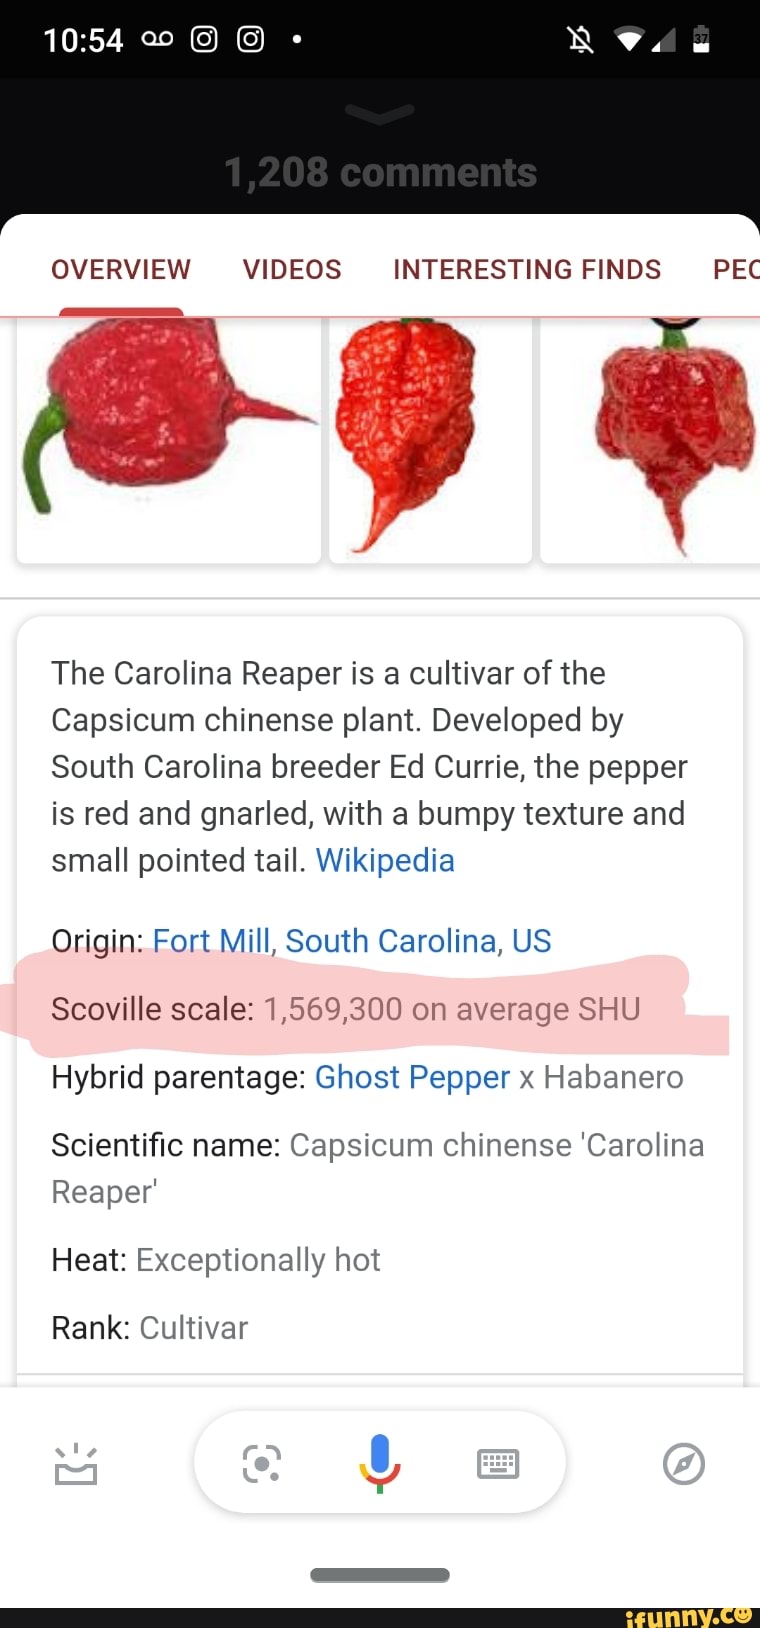 Scoville scale - Wikipedia